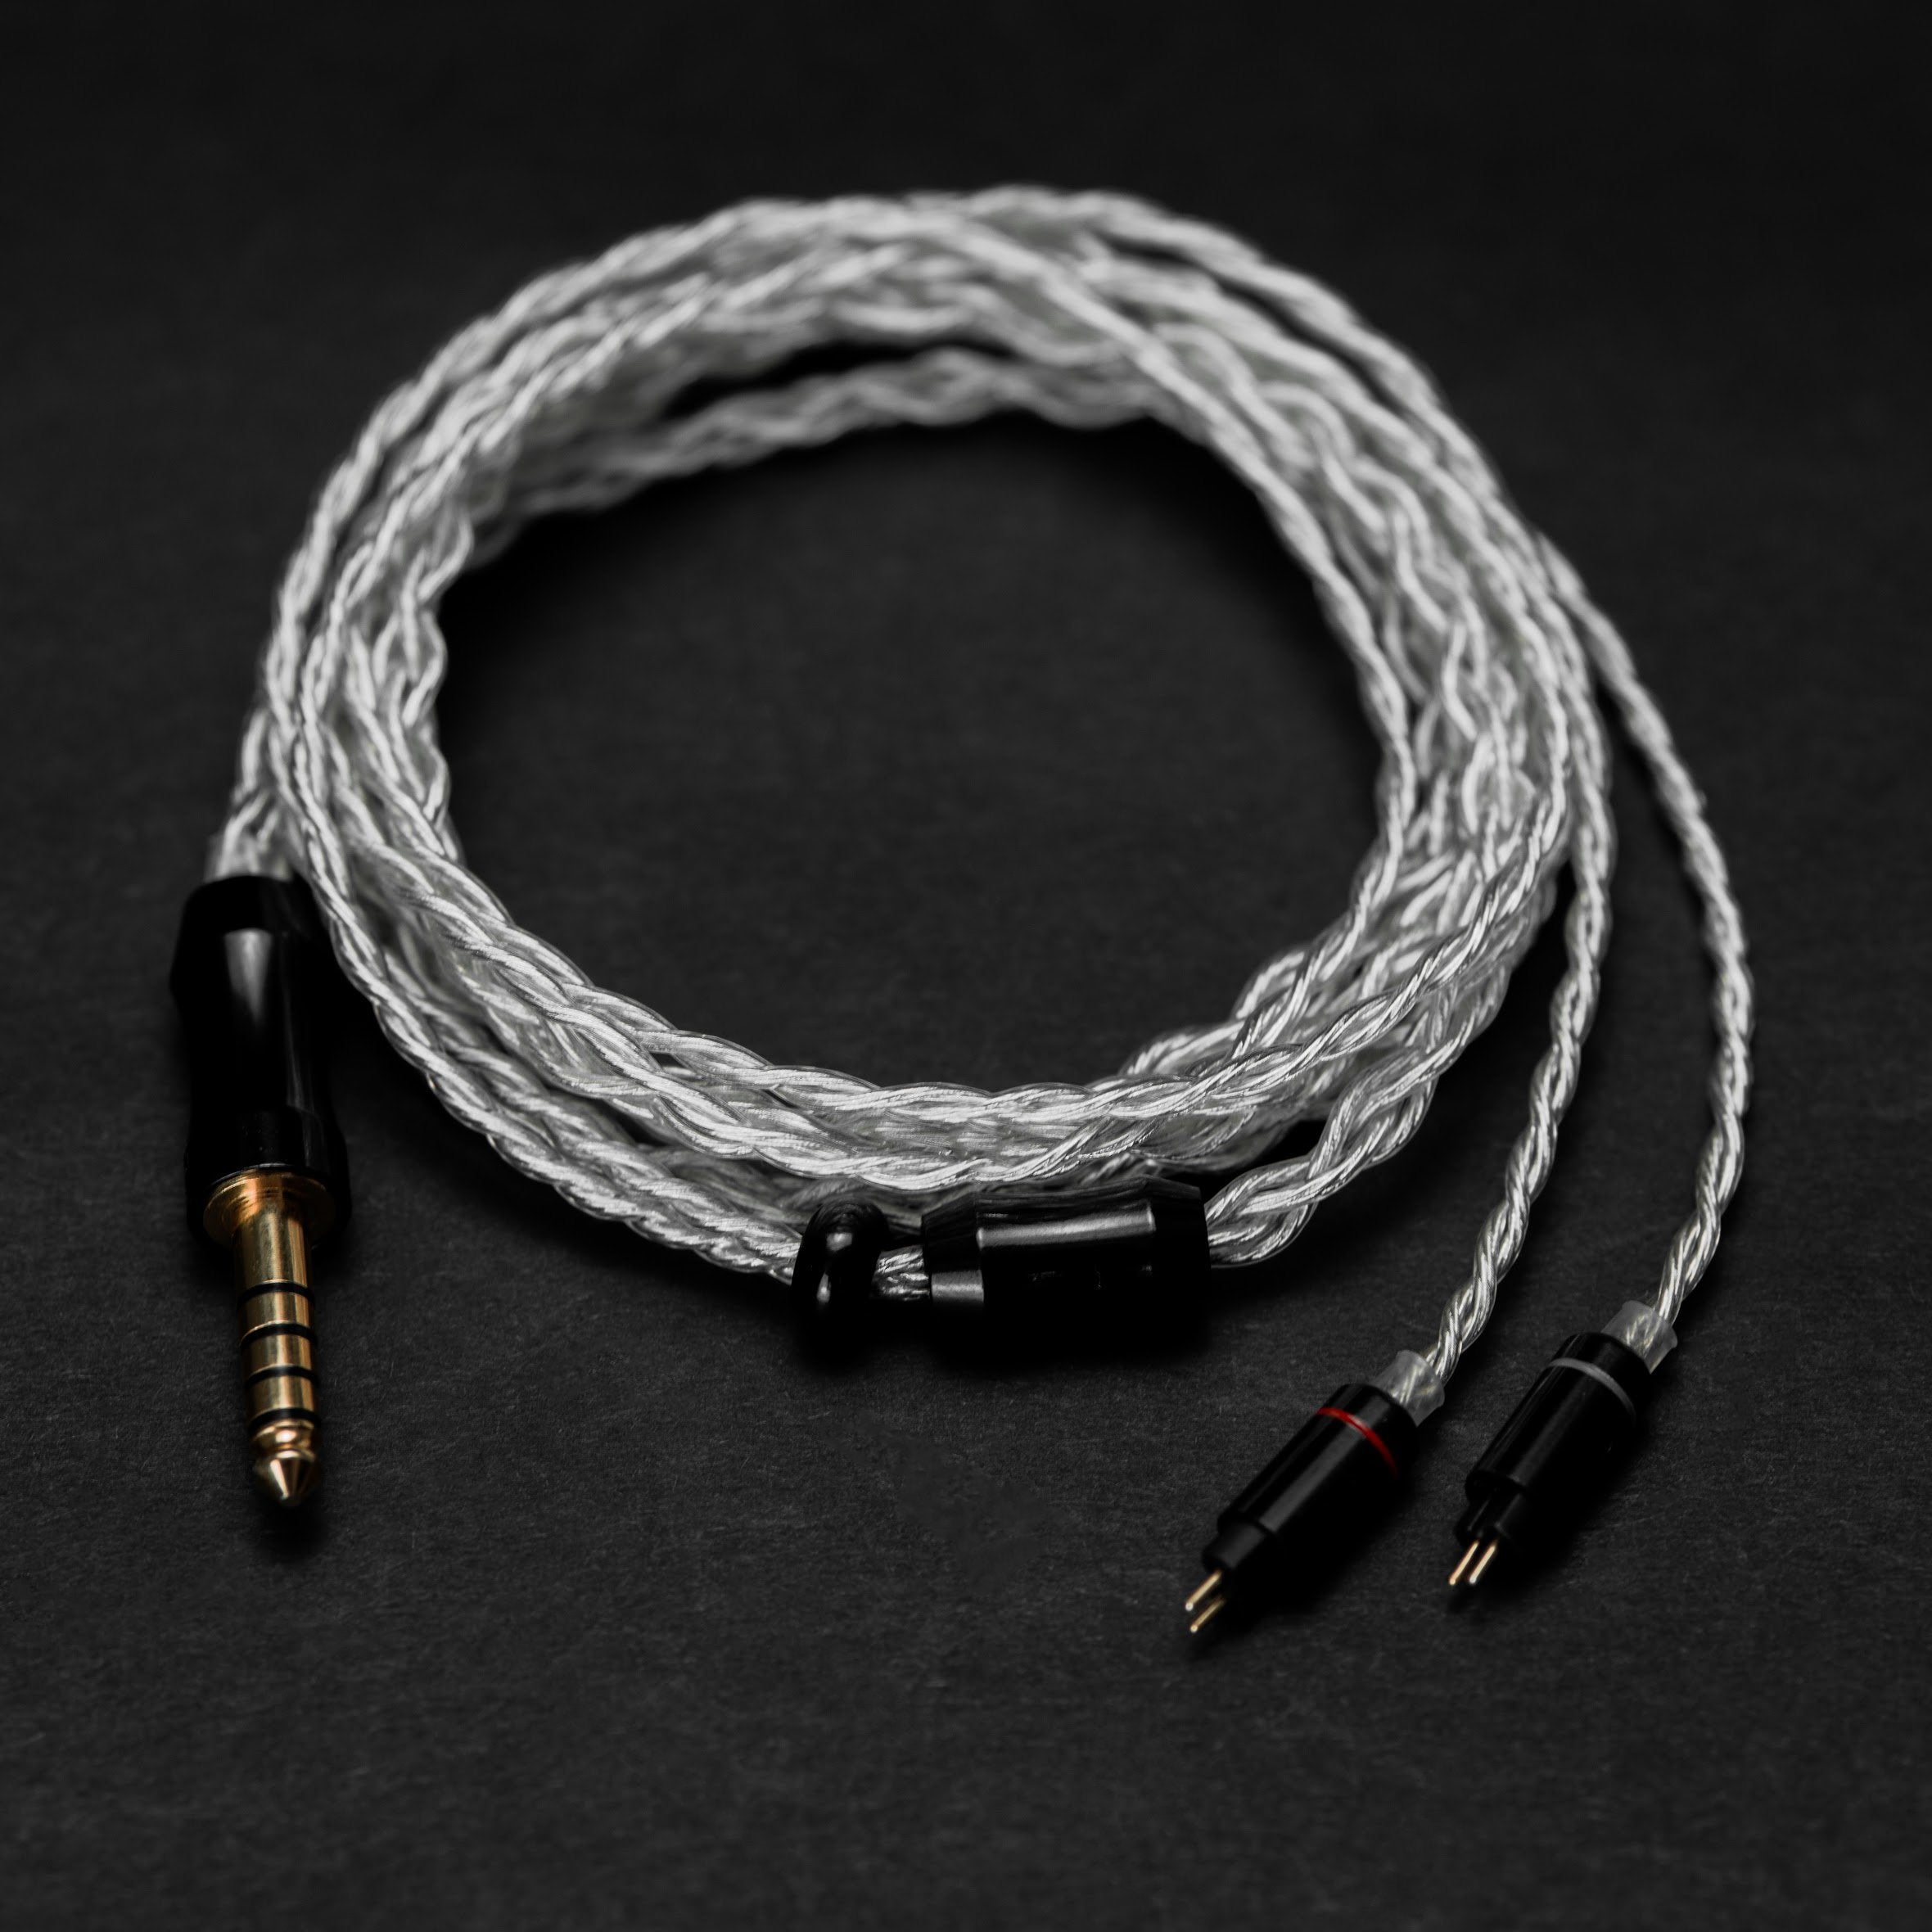 Crimson Micro Cord ca 1 mm accessory cord